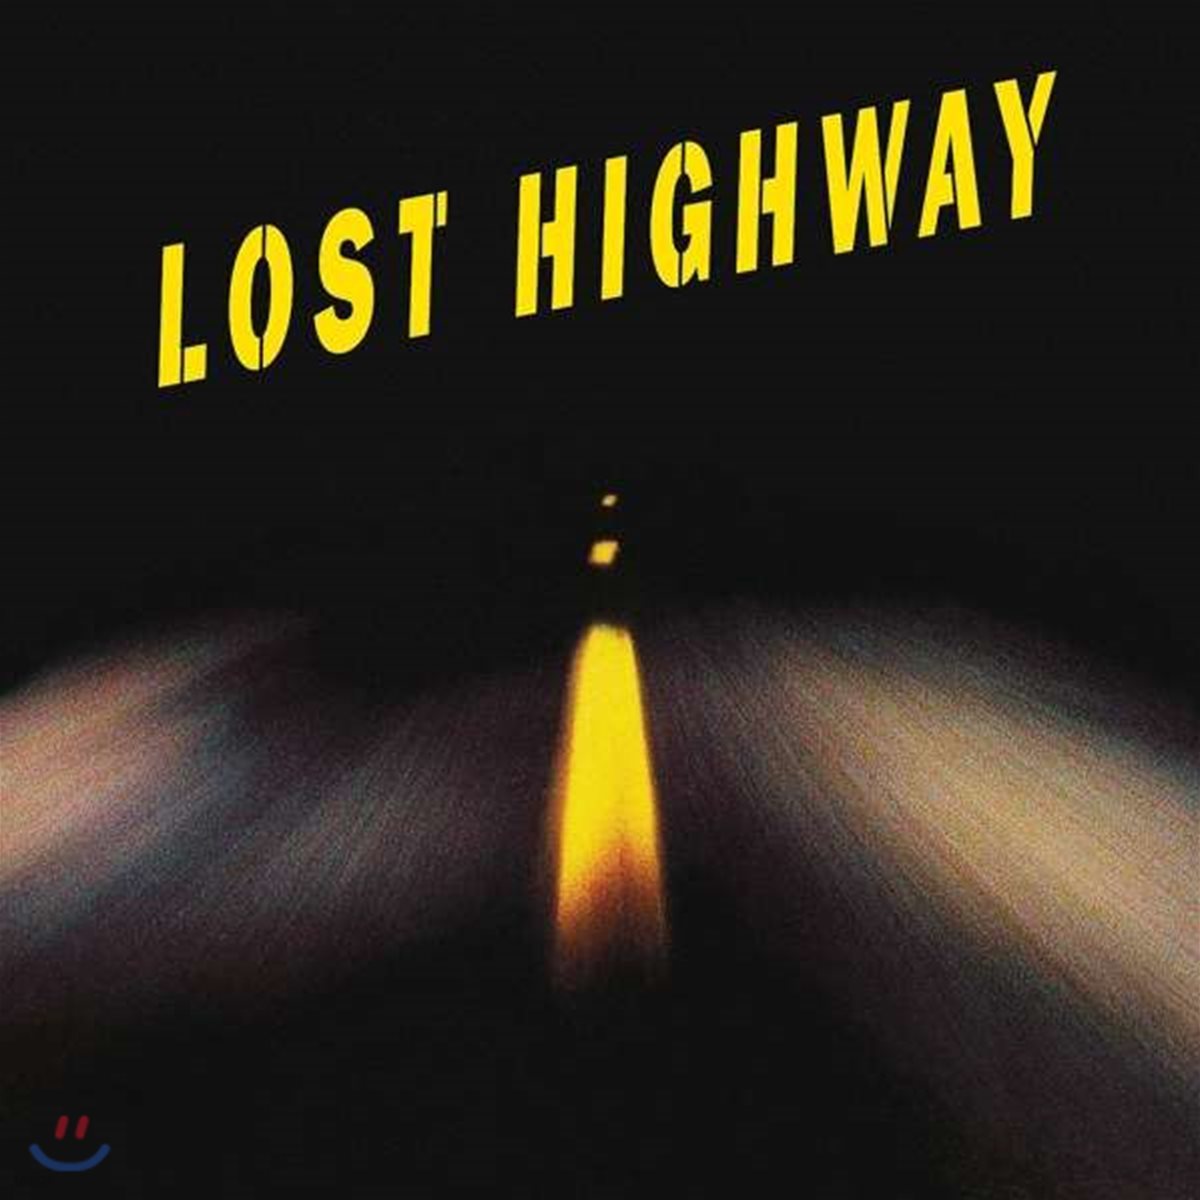 로스트 하이웨이 영화음악 (Lost Highway OST - Produced by Trent Reznor) [2LP]